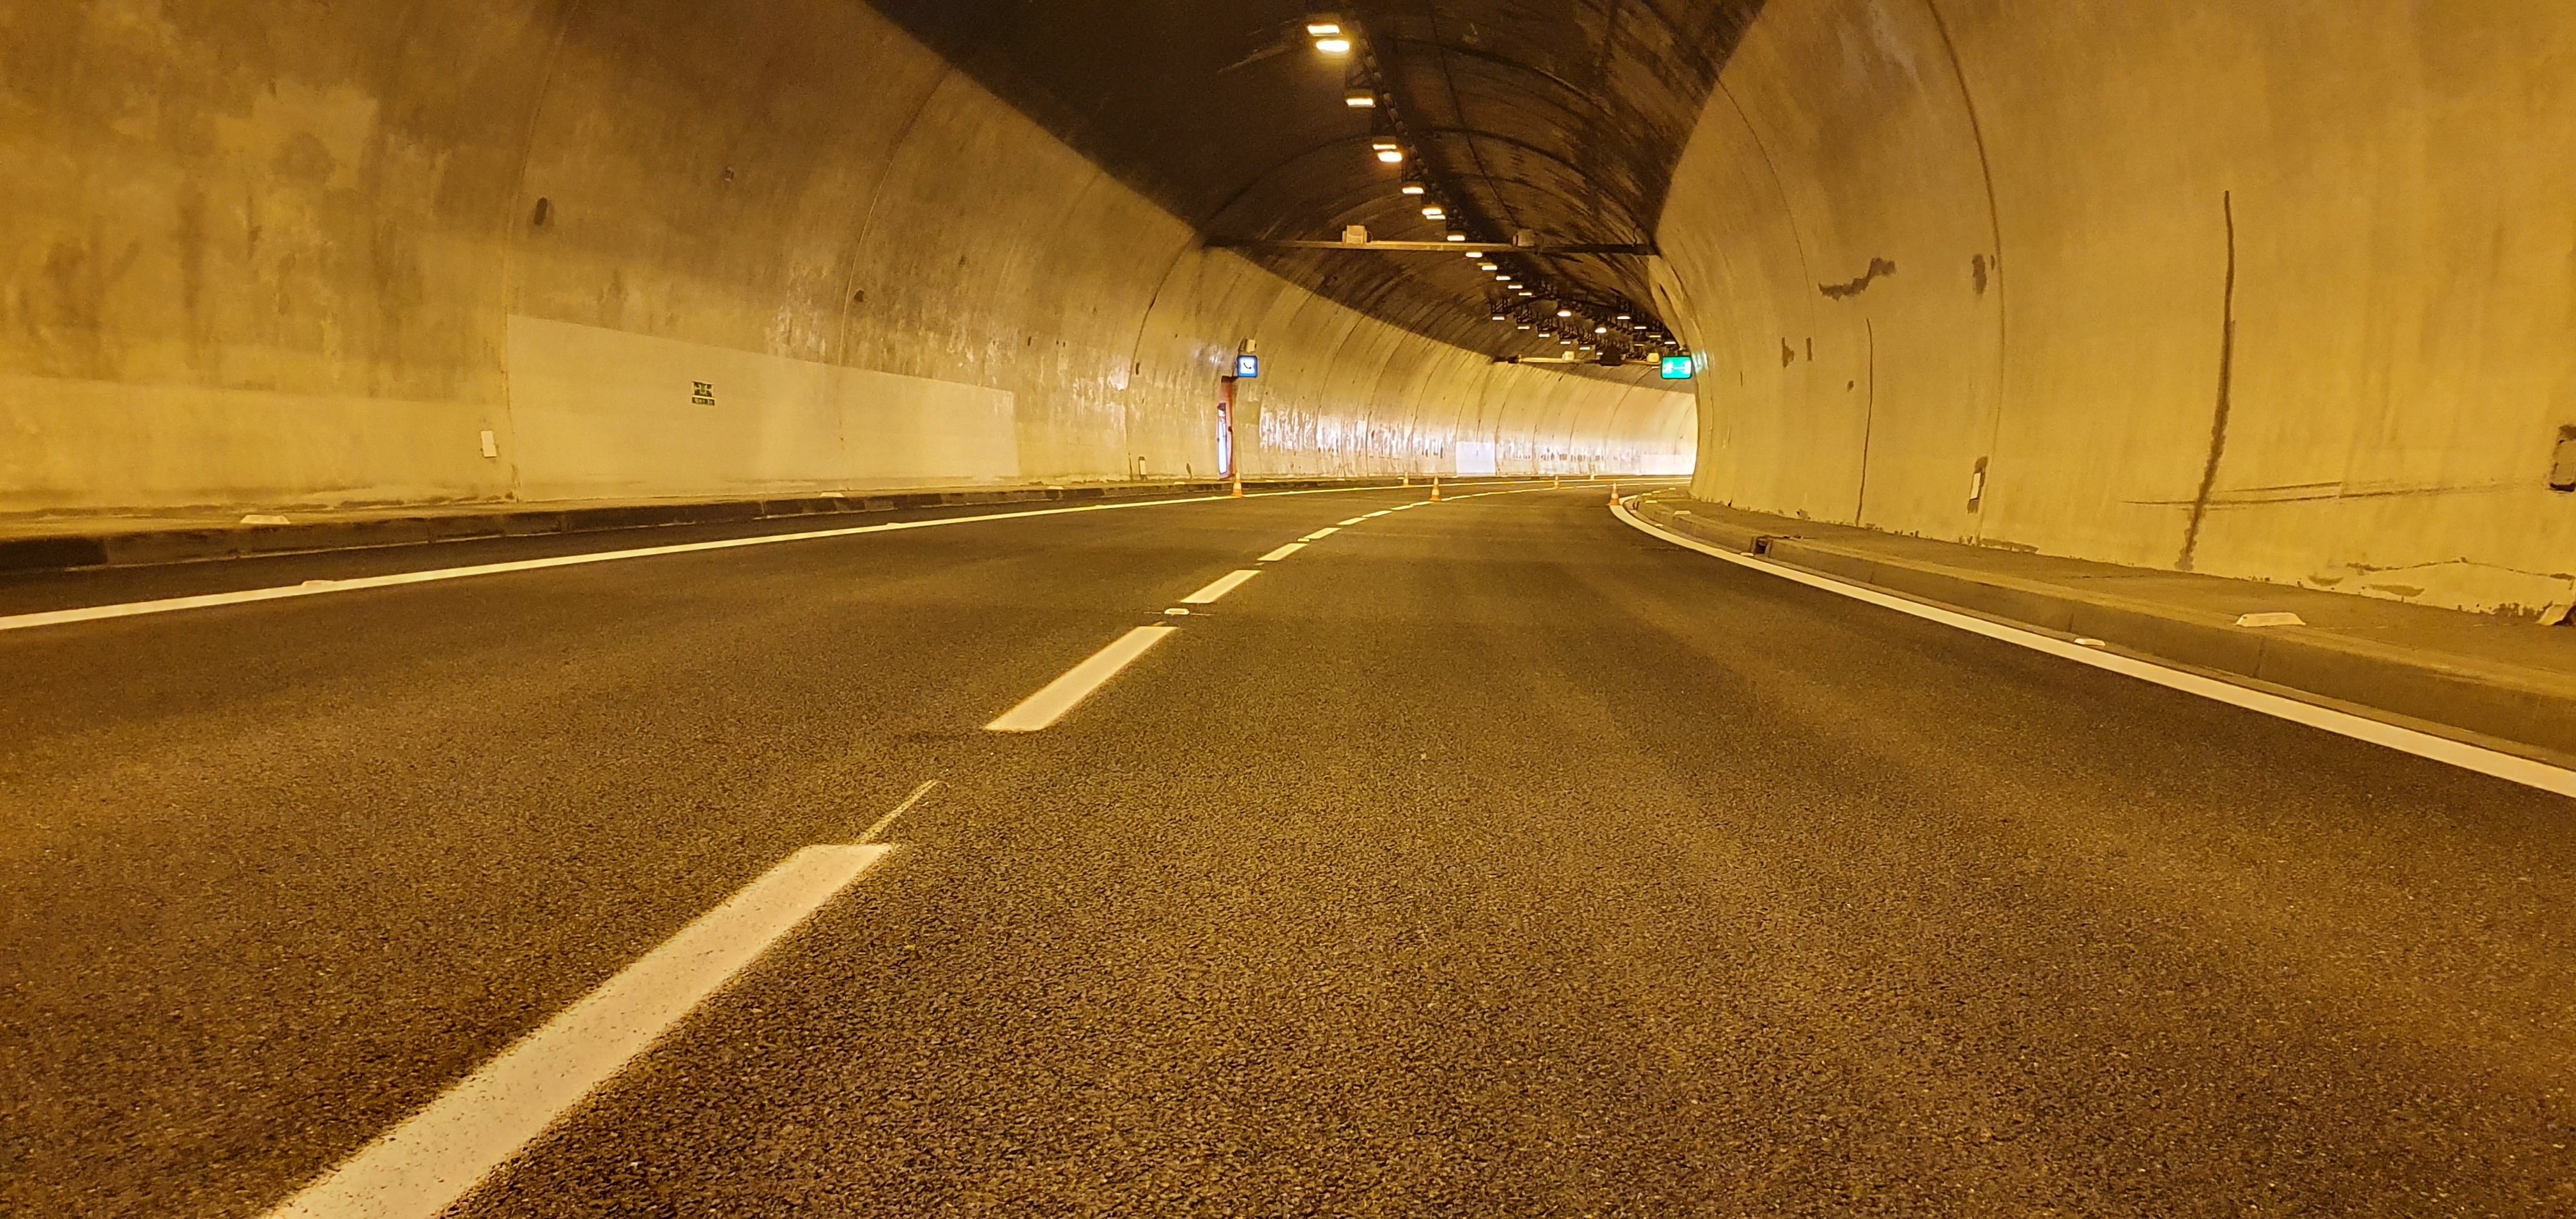 I/23 Pisárecký tunel - Budowa dróg i mostów